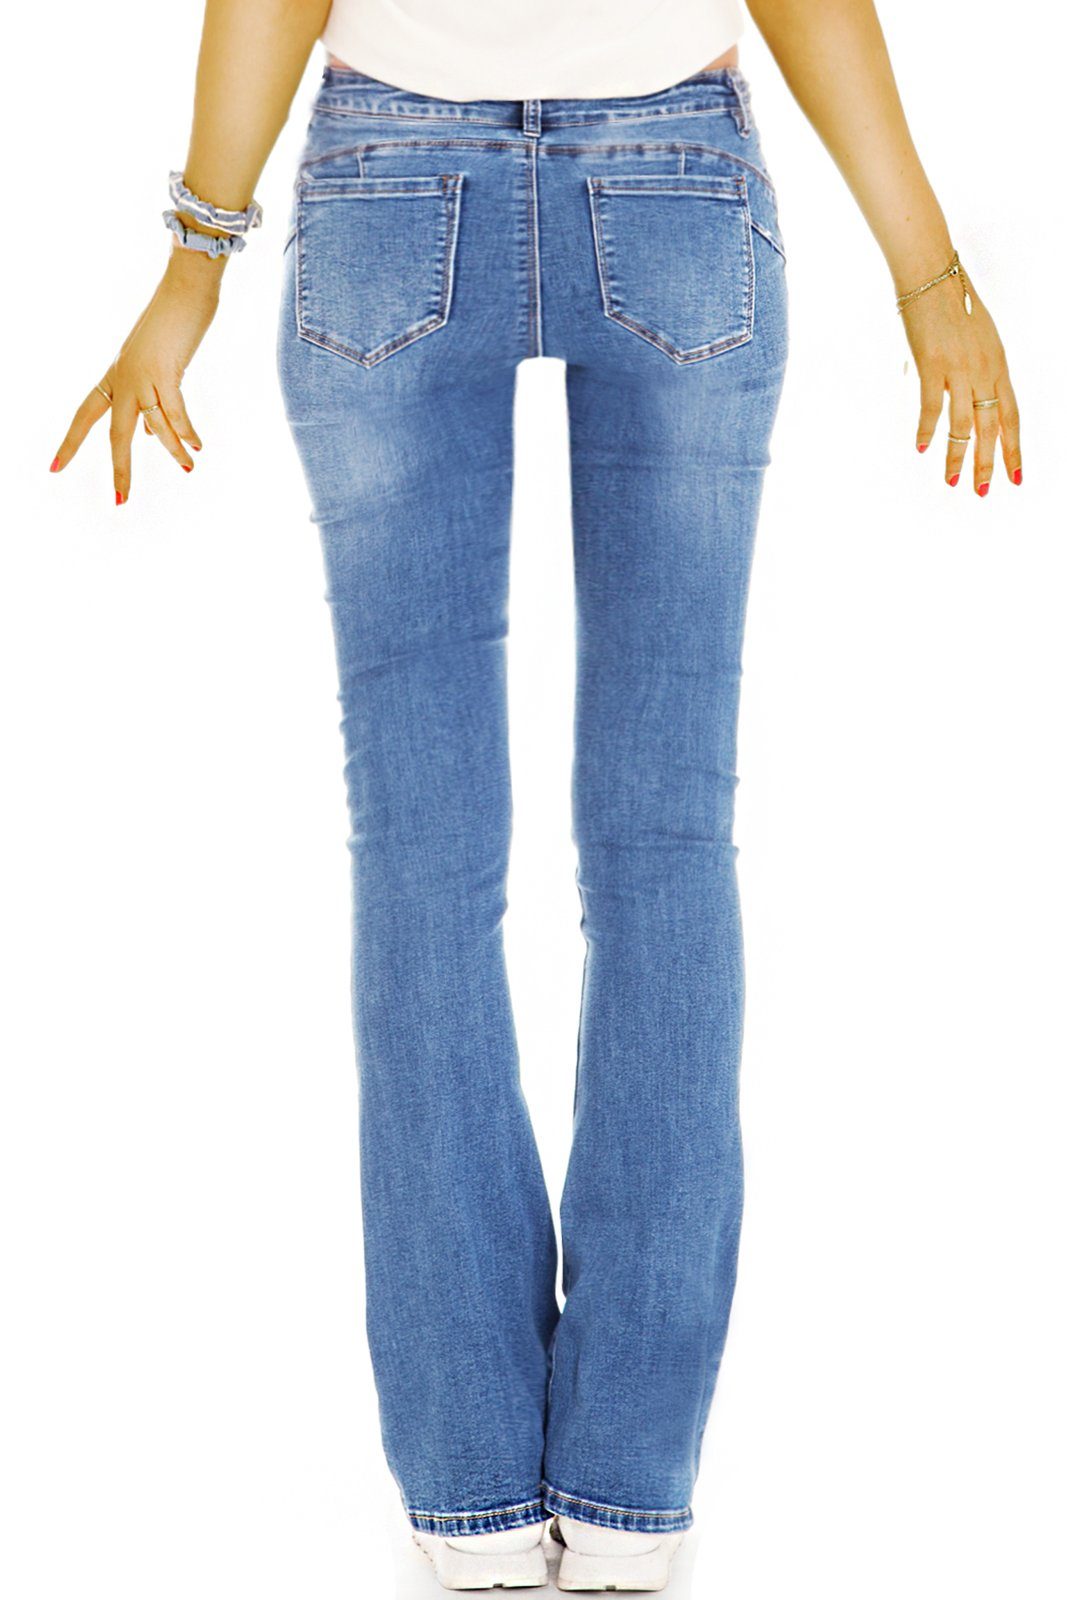 Hosen - Medium Waist Bootcut Stretch-Anteil, - dunkelblau bequeme Stretch Bootcut-Jeans Denim Damen j44p mit 5-Pocket-Style Jeans styled be